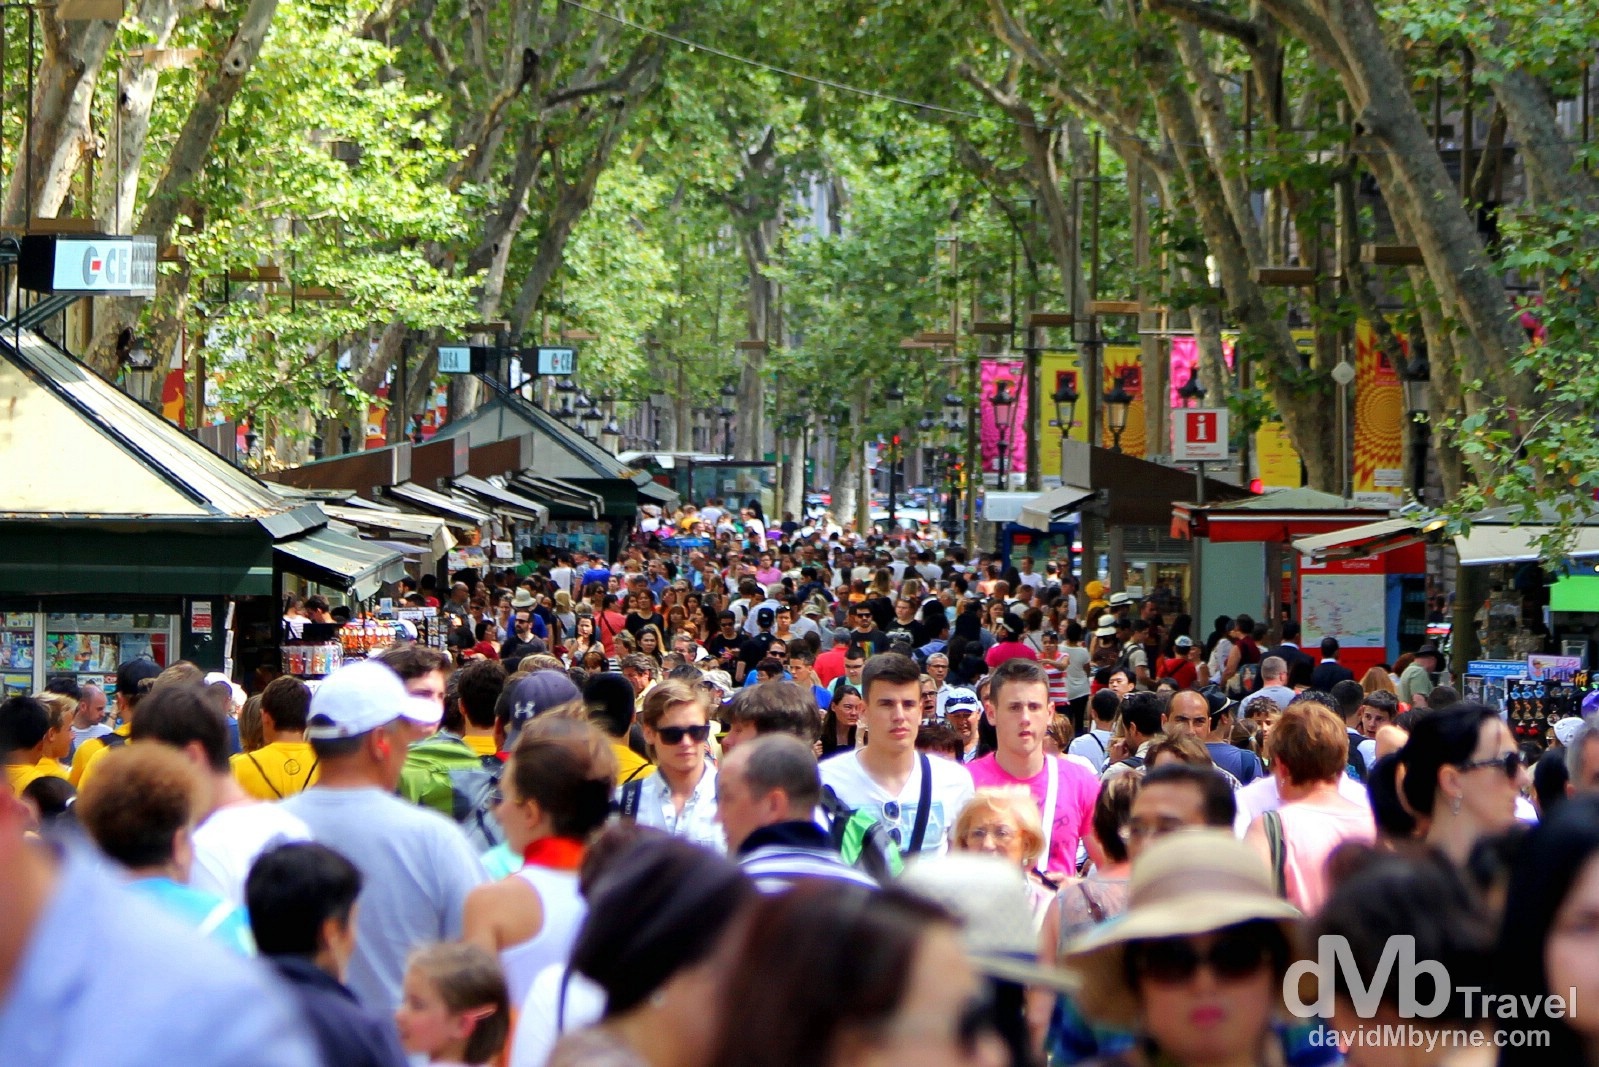 People on Spain's most famous street, La Rambla. Barcelona, Spain. June 18th, 2014.